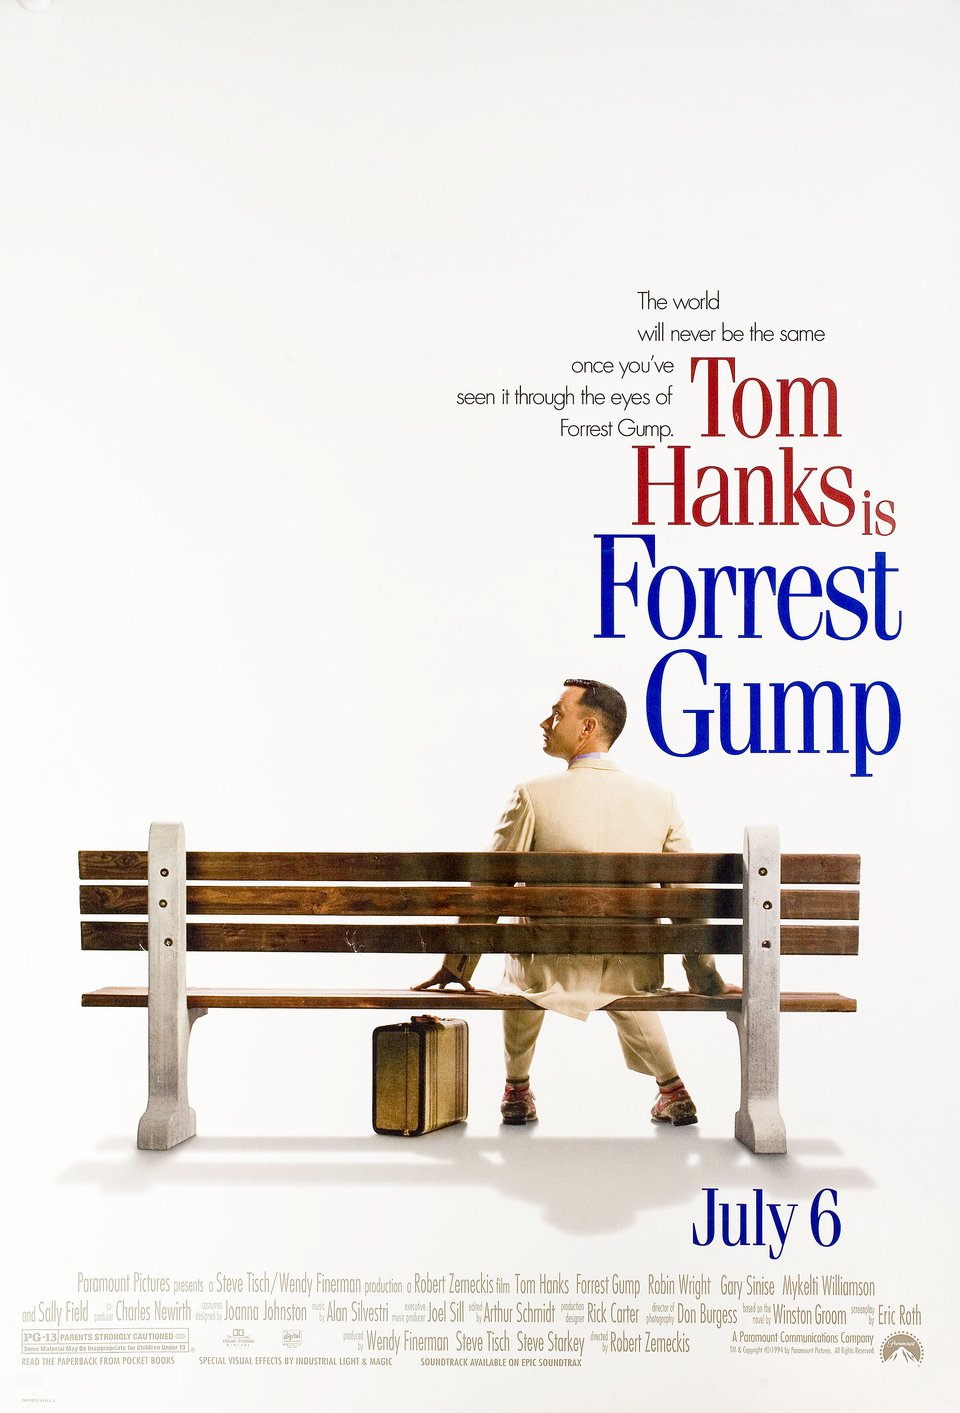 1. Forrest Gump (1994)